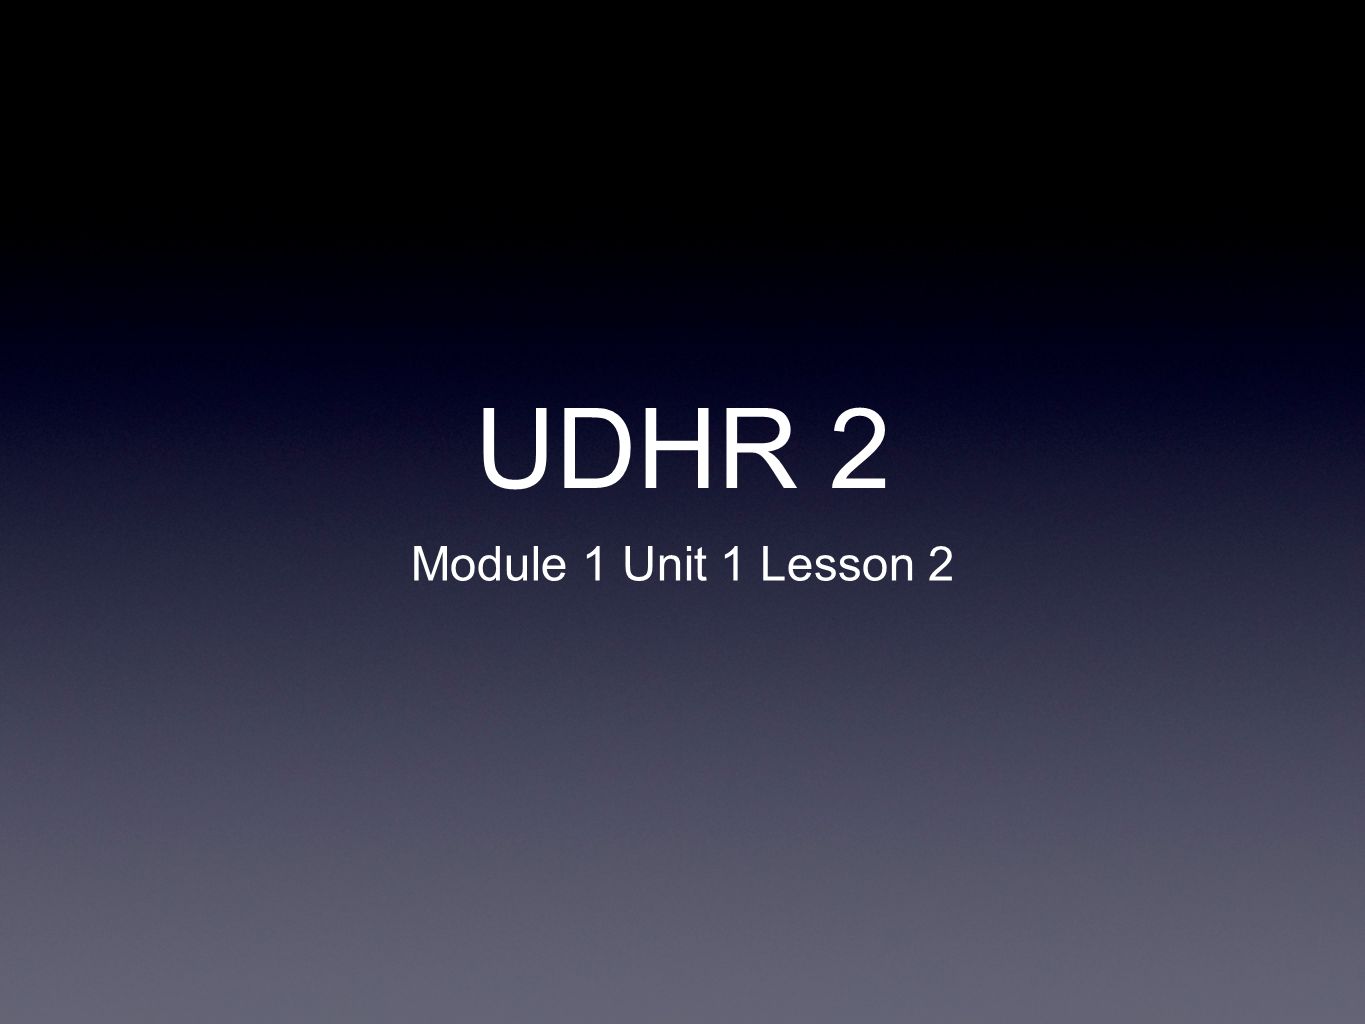 UDHR 2 Module 1 Unit 1 Lesson 2